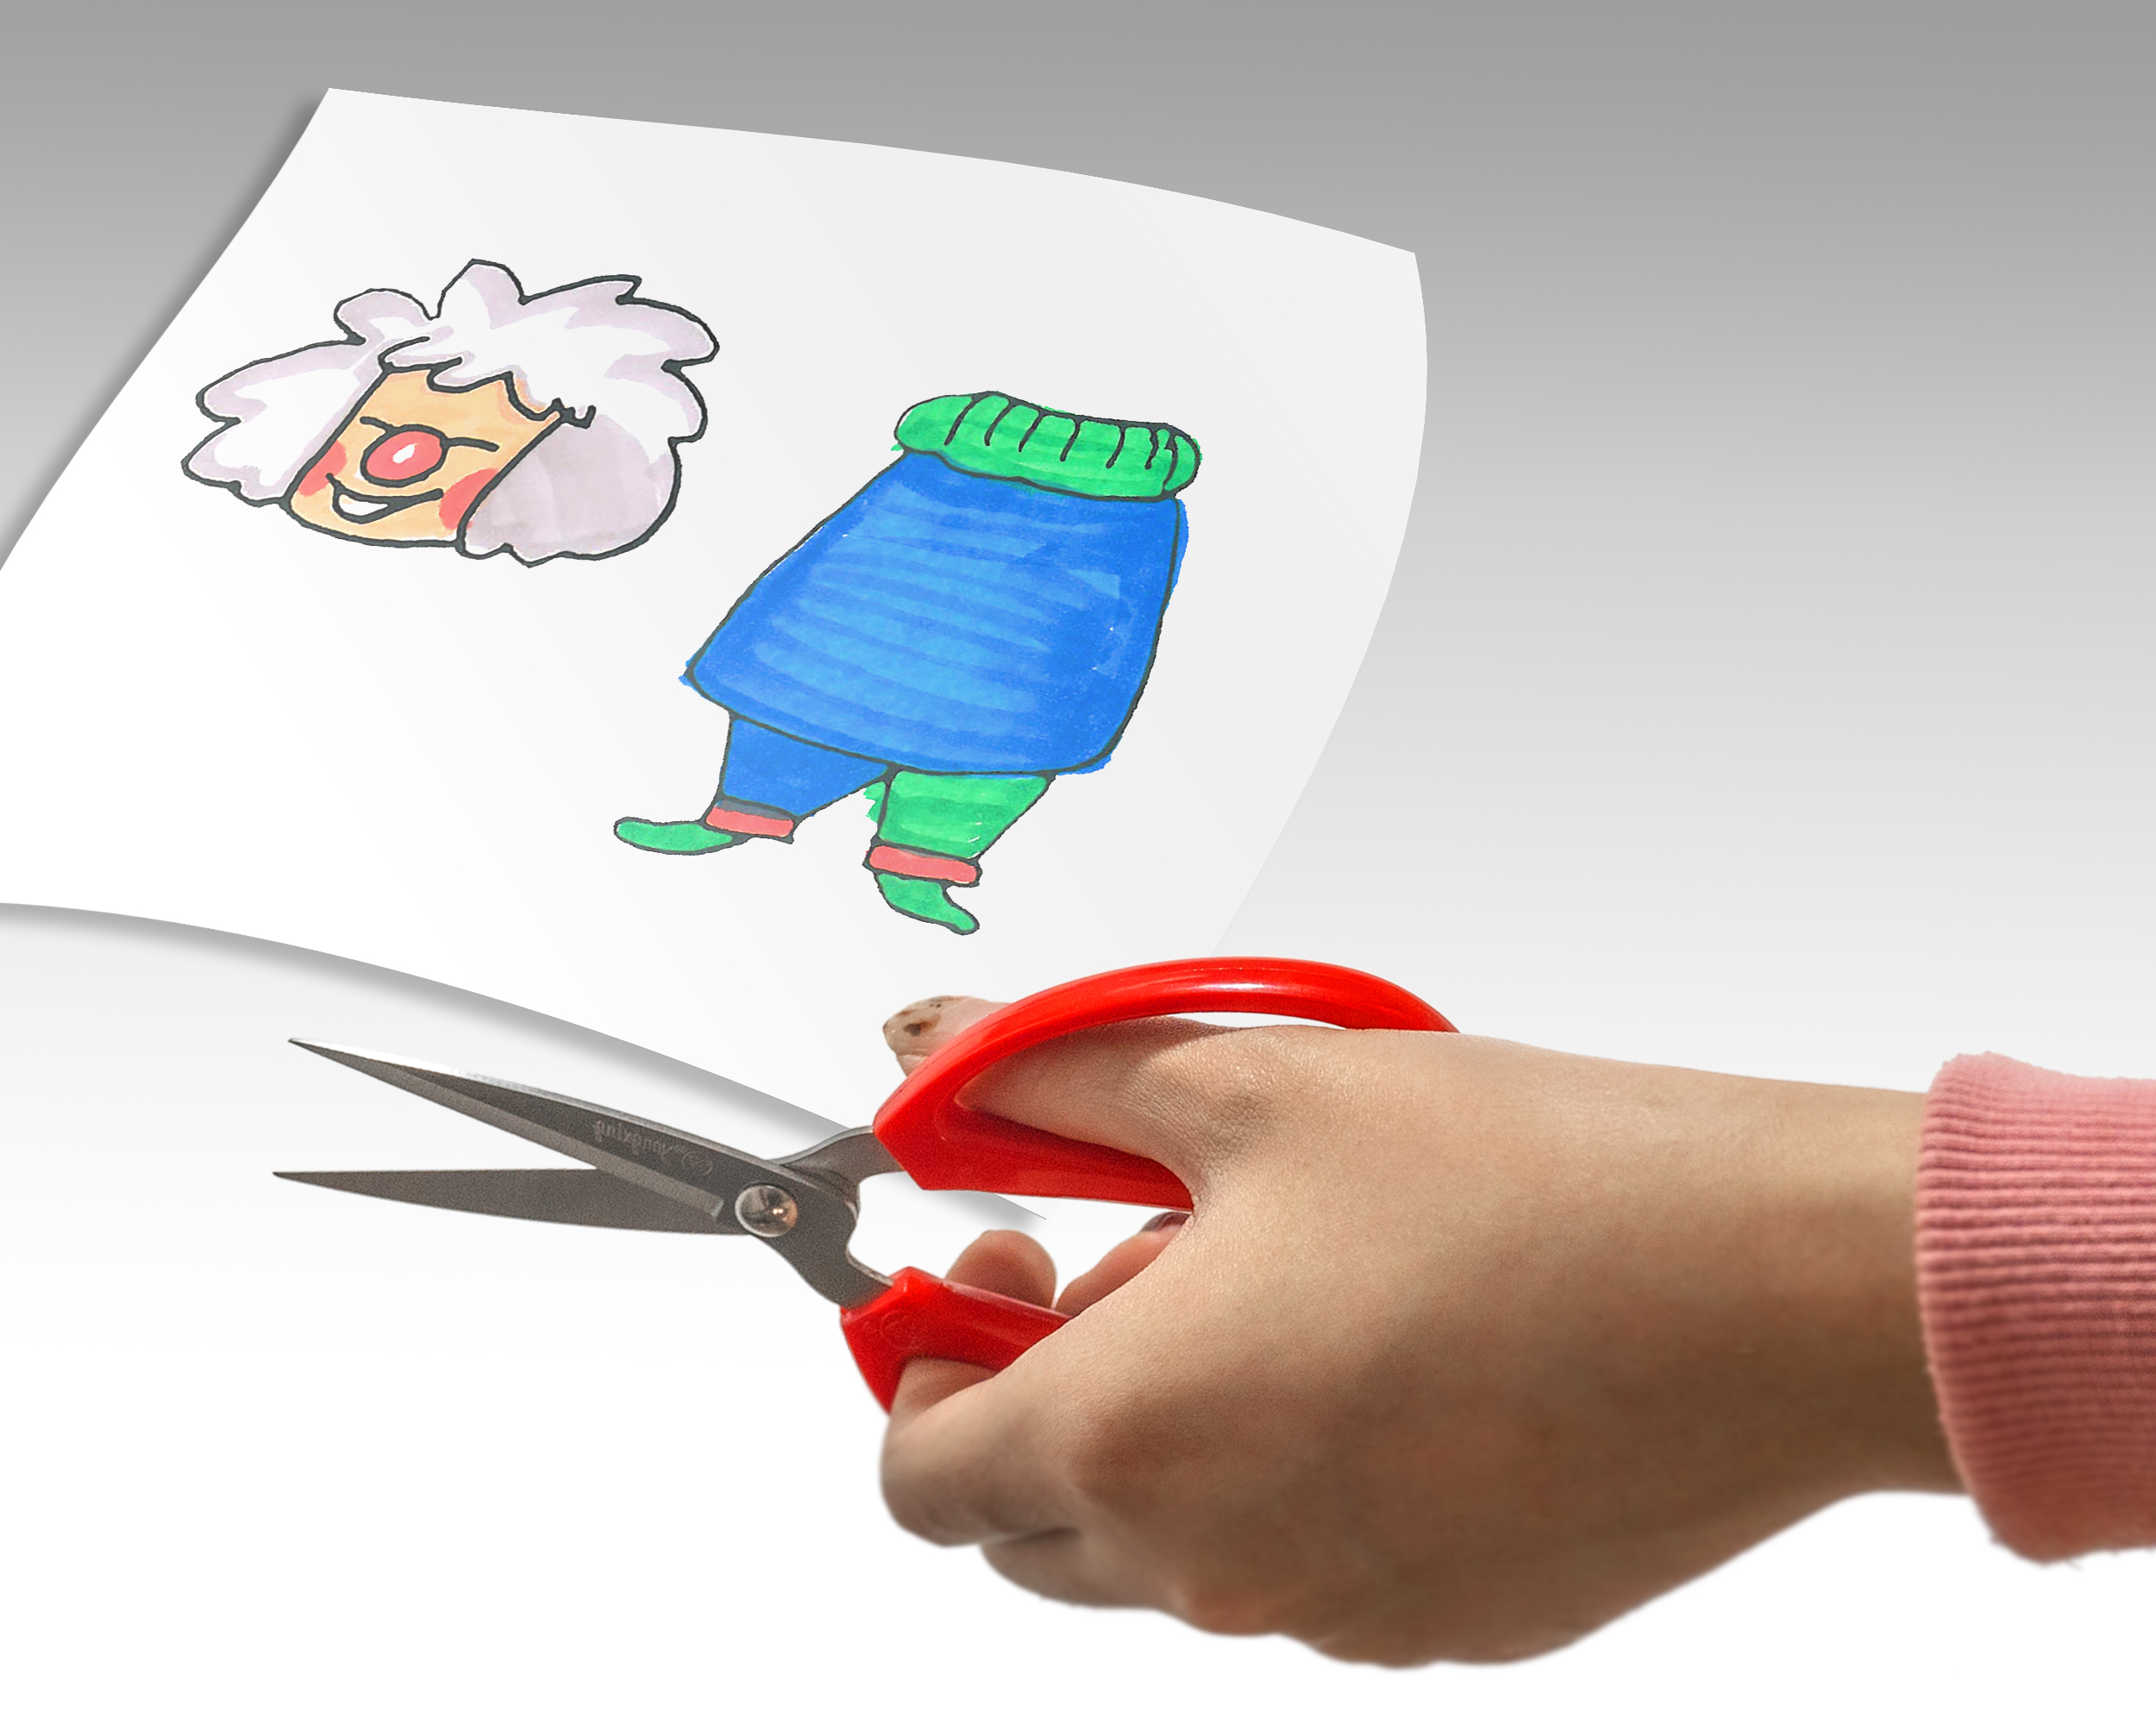 女生身最喜欢的小手工小制作礼物 小丑手绘剪纸动画DIY方法步骤教程